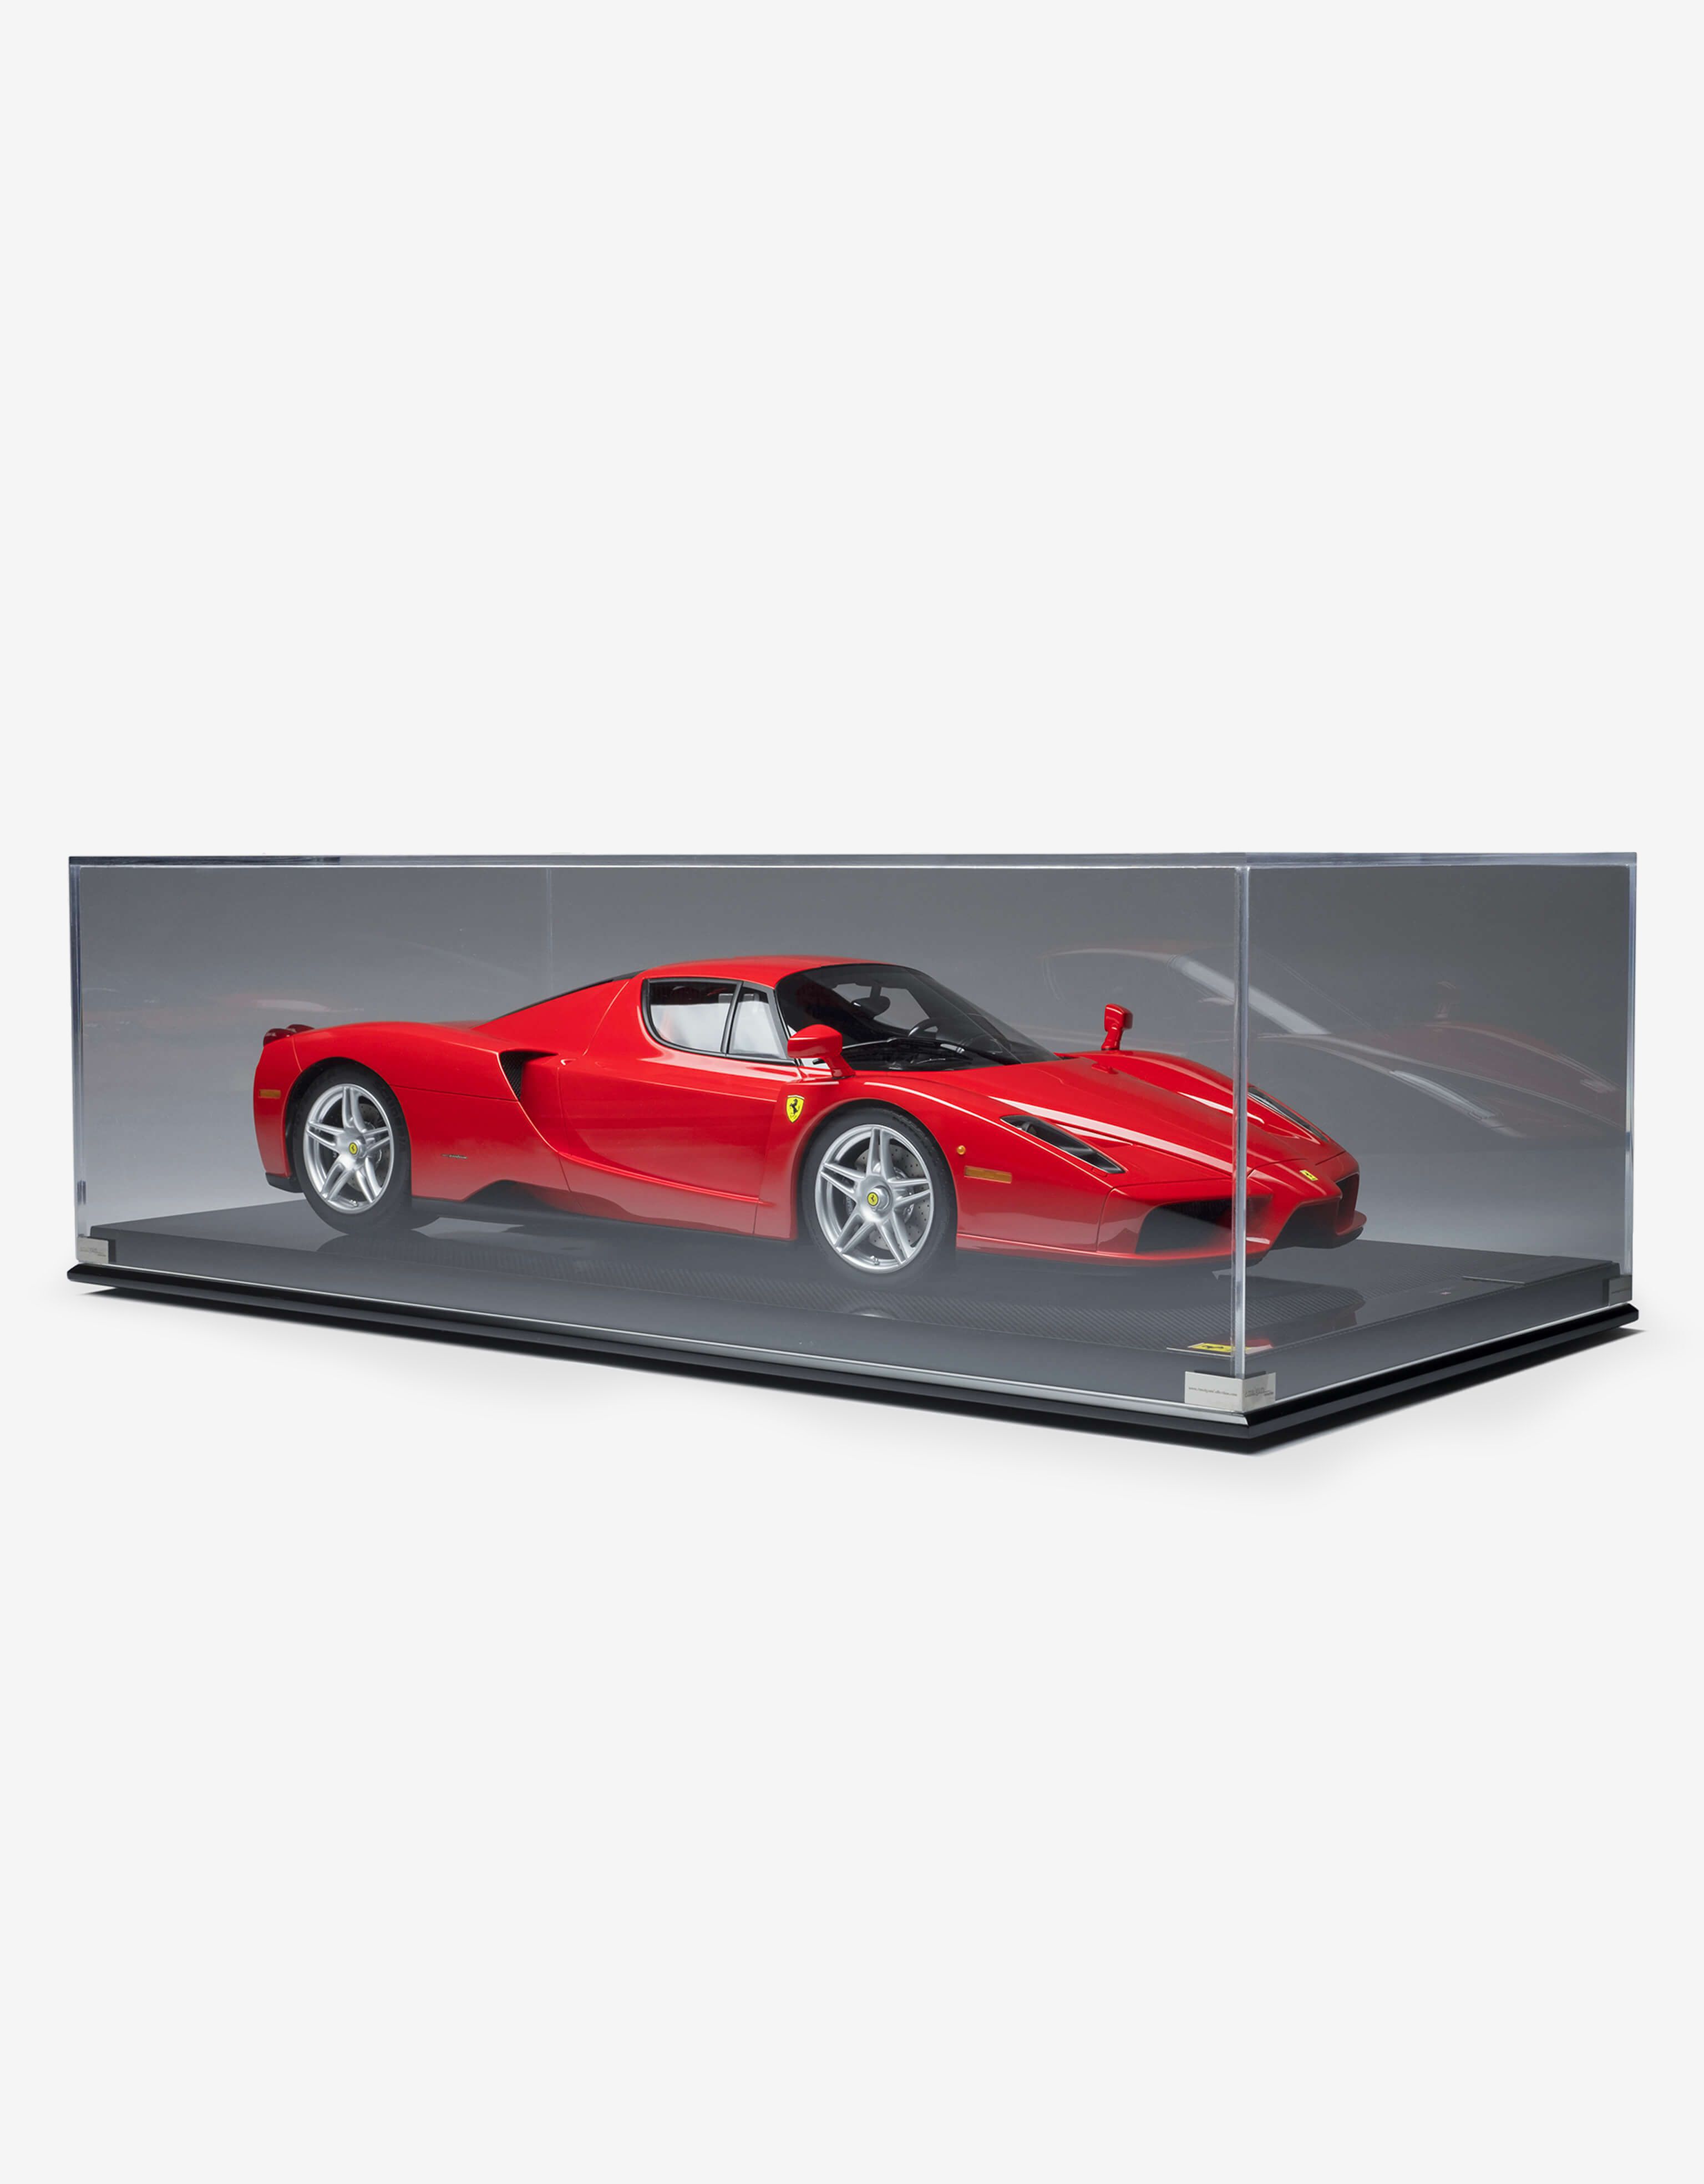 Ferrari Ferrari Enzo model in 1:8 scale 多色 L4067f